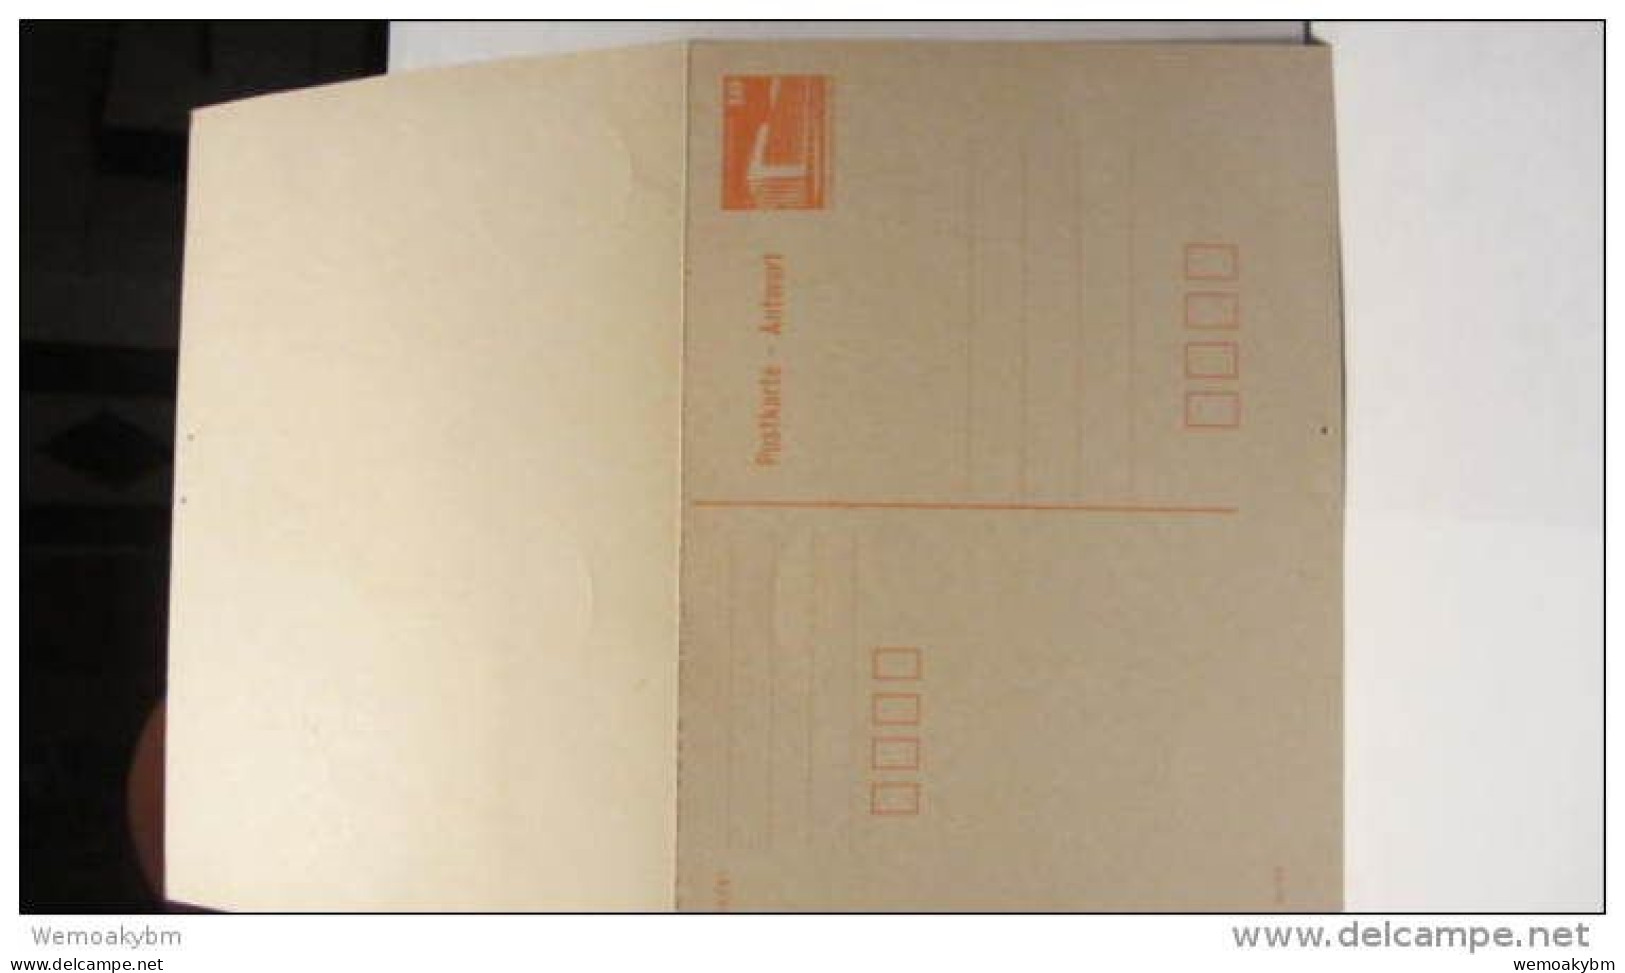 DDR-WU: Antwort-GA-Karte Mit Frage- Und Antwort-Teil Als Einschr. Aus Erlbach (754), 10 Pf überfr. V 2.7.90 Knr: P 88 II - Postcards - Used